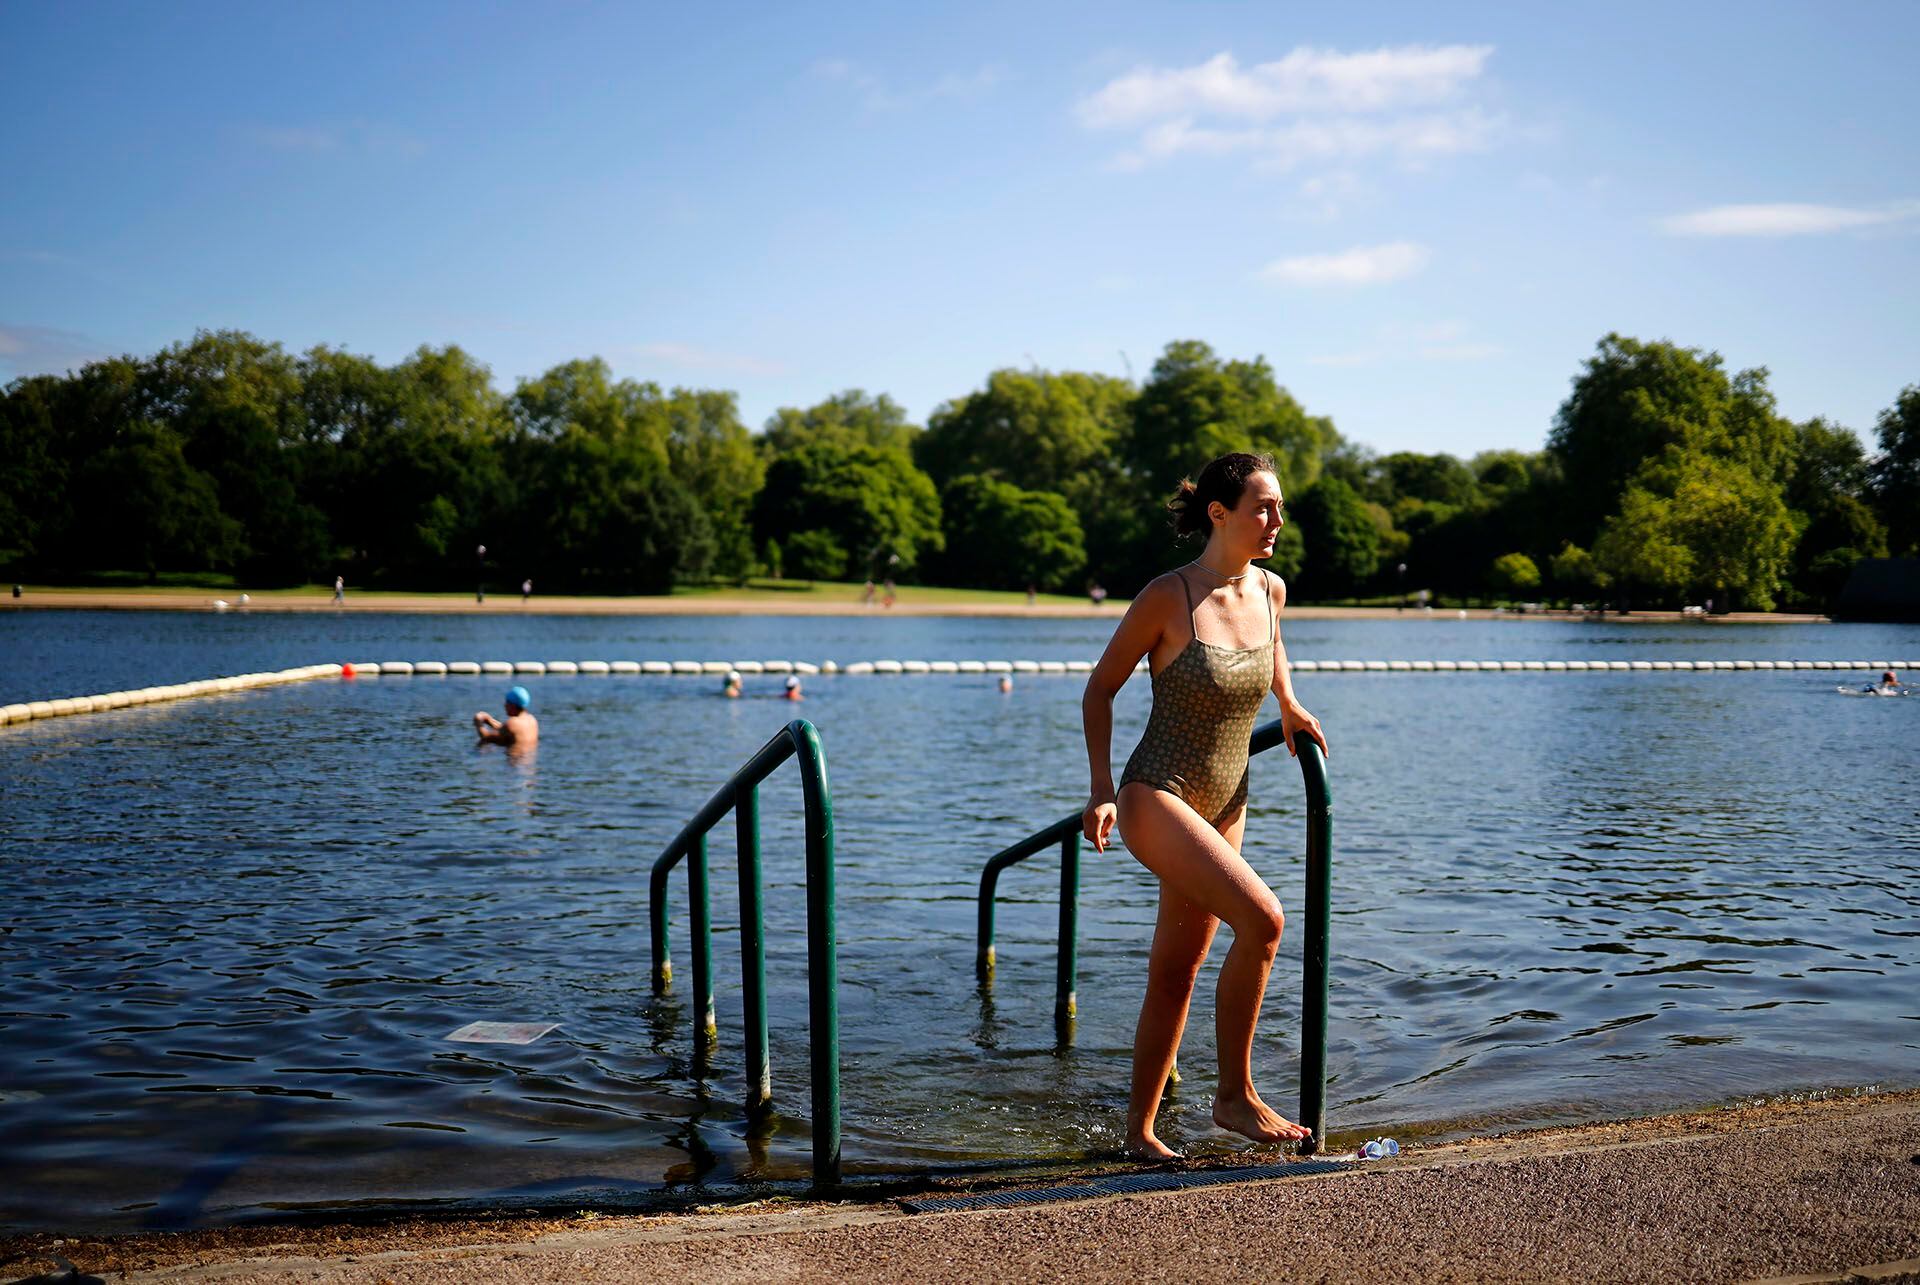 Bañistas se refrescan en el Serpentine Lido del Hyde Park de Londres.